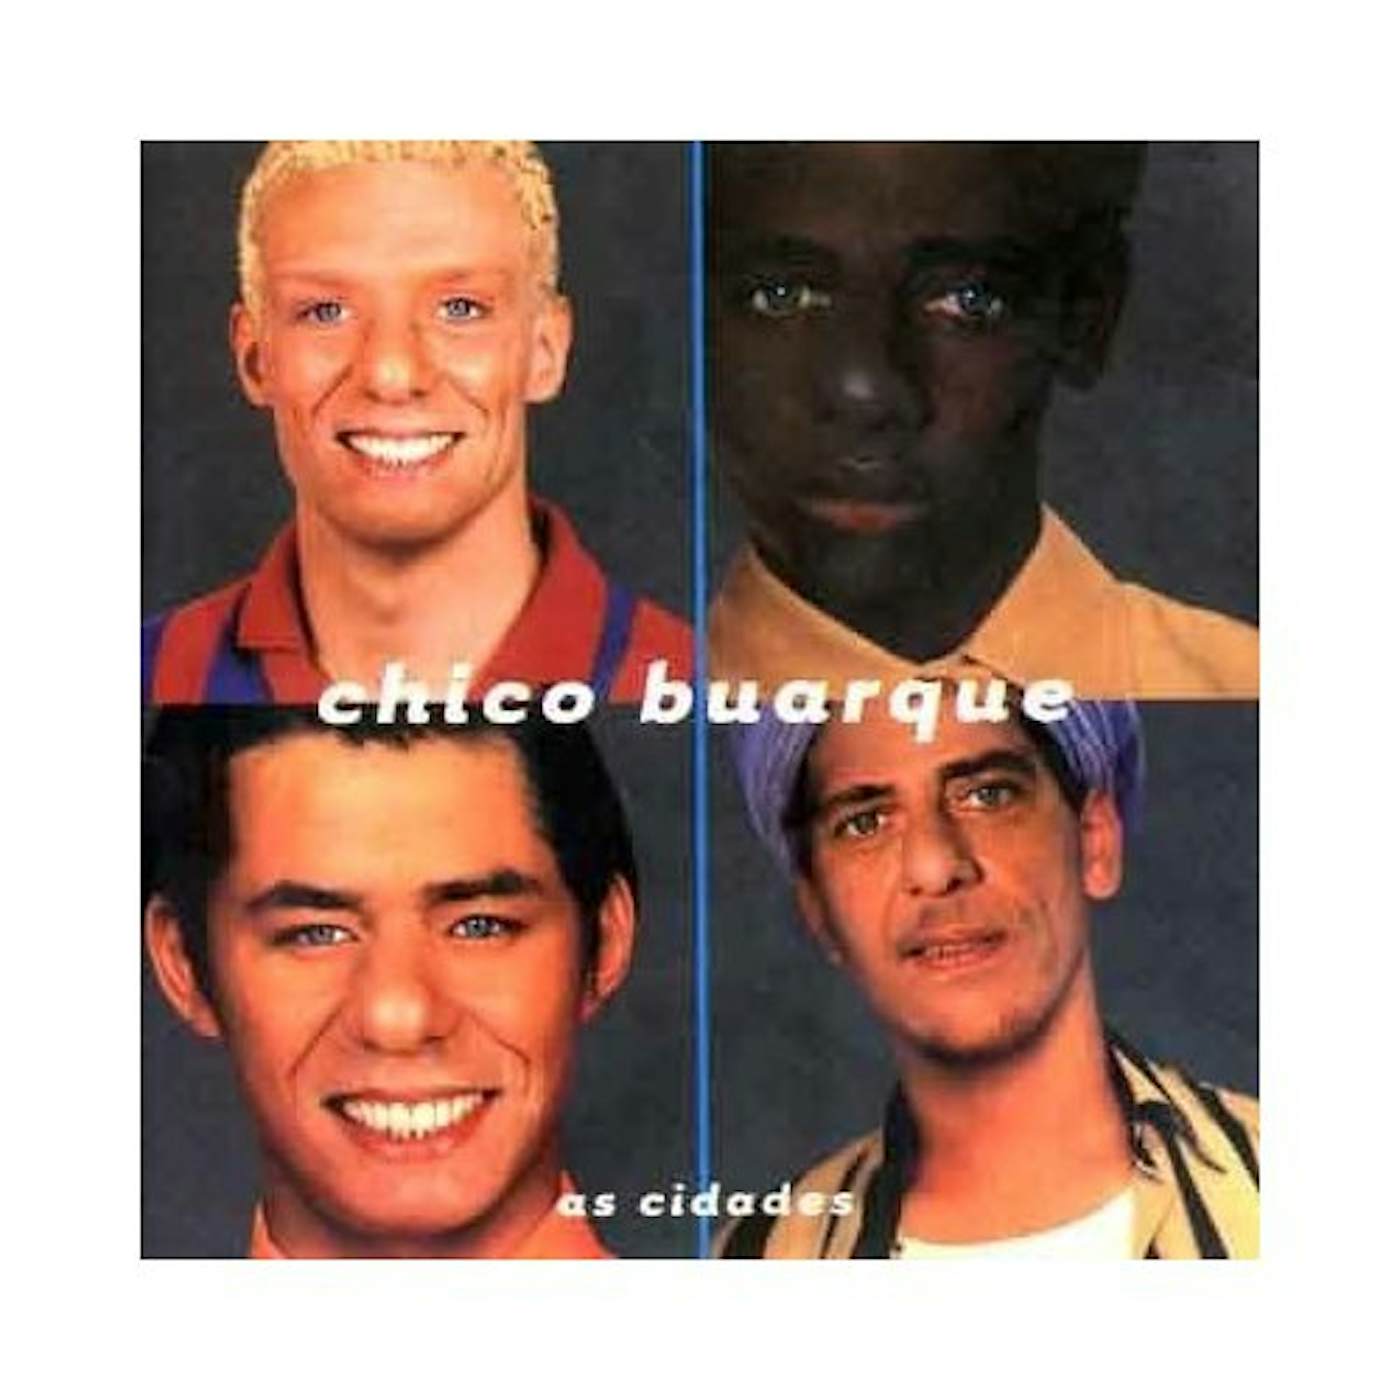 Chico Buarque AS CIDADES CD